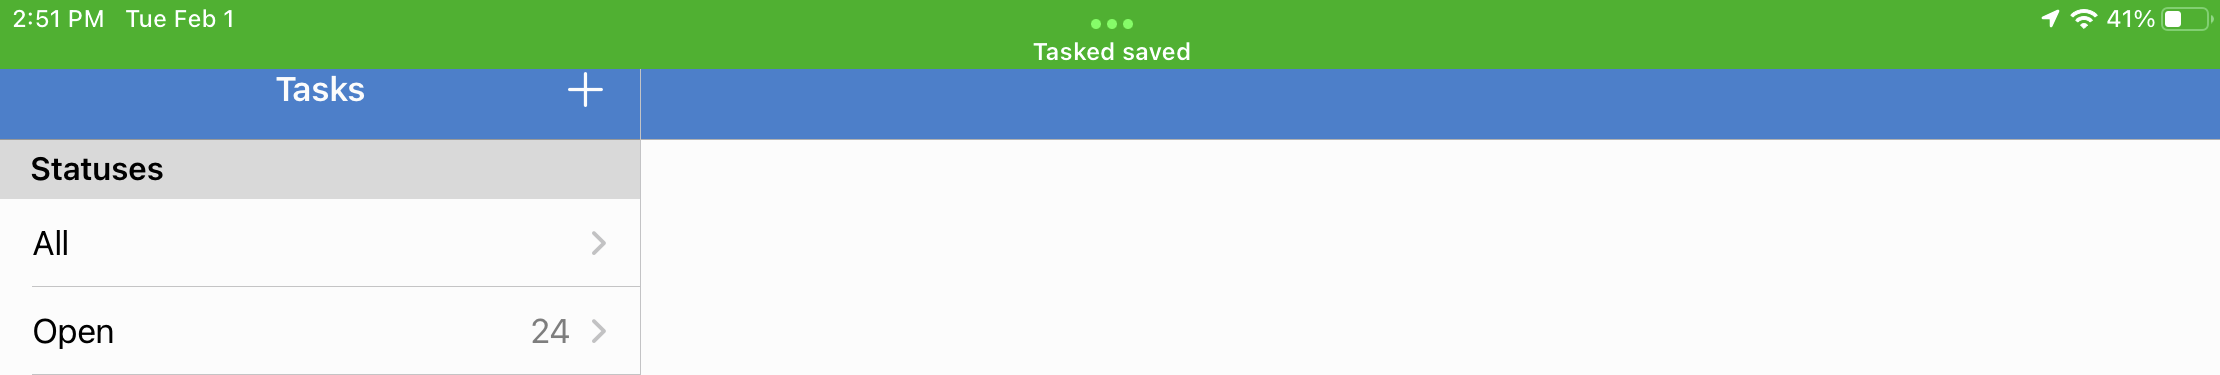 Task_Saved.PNG